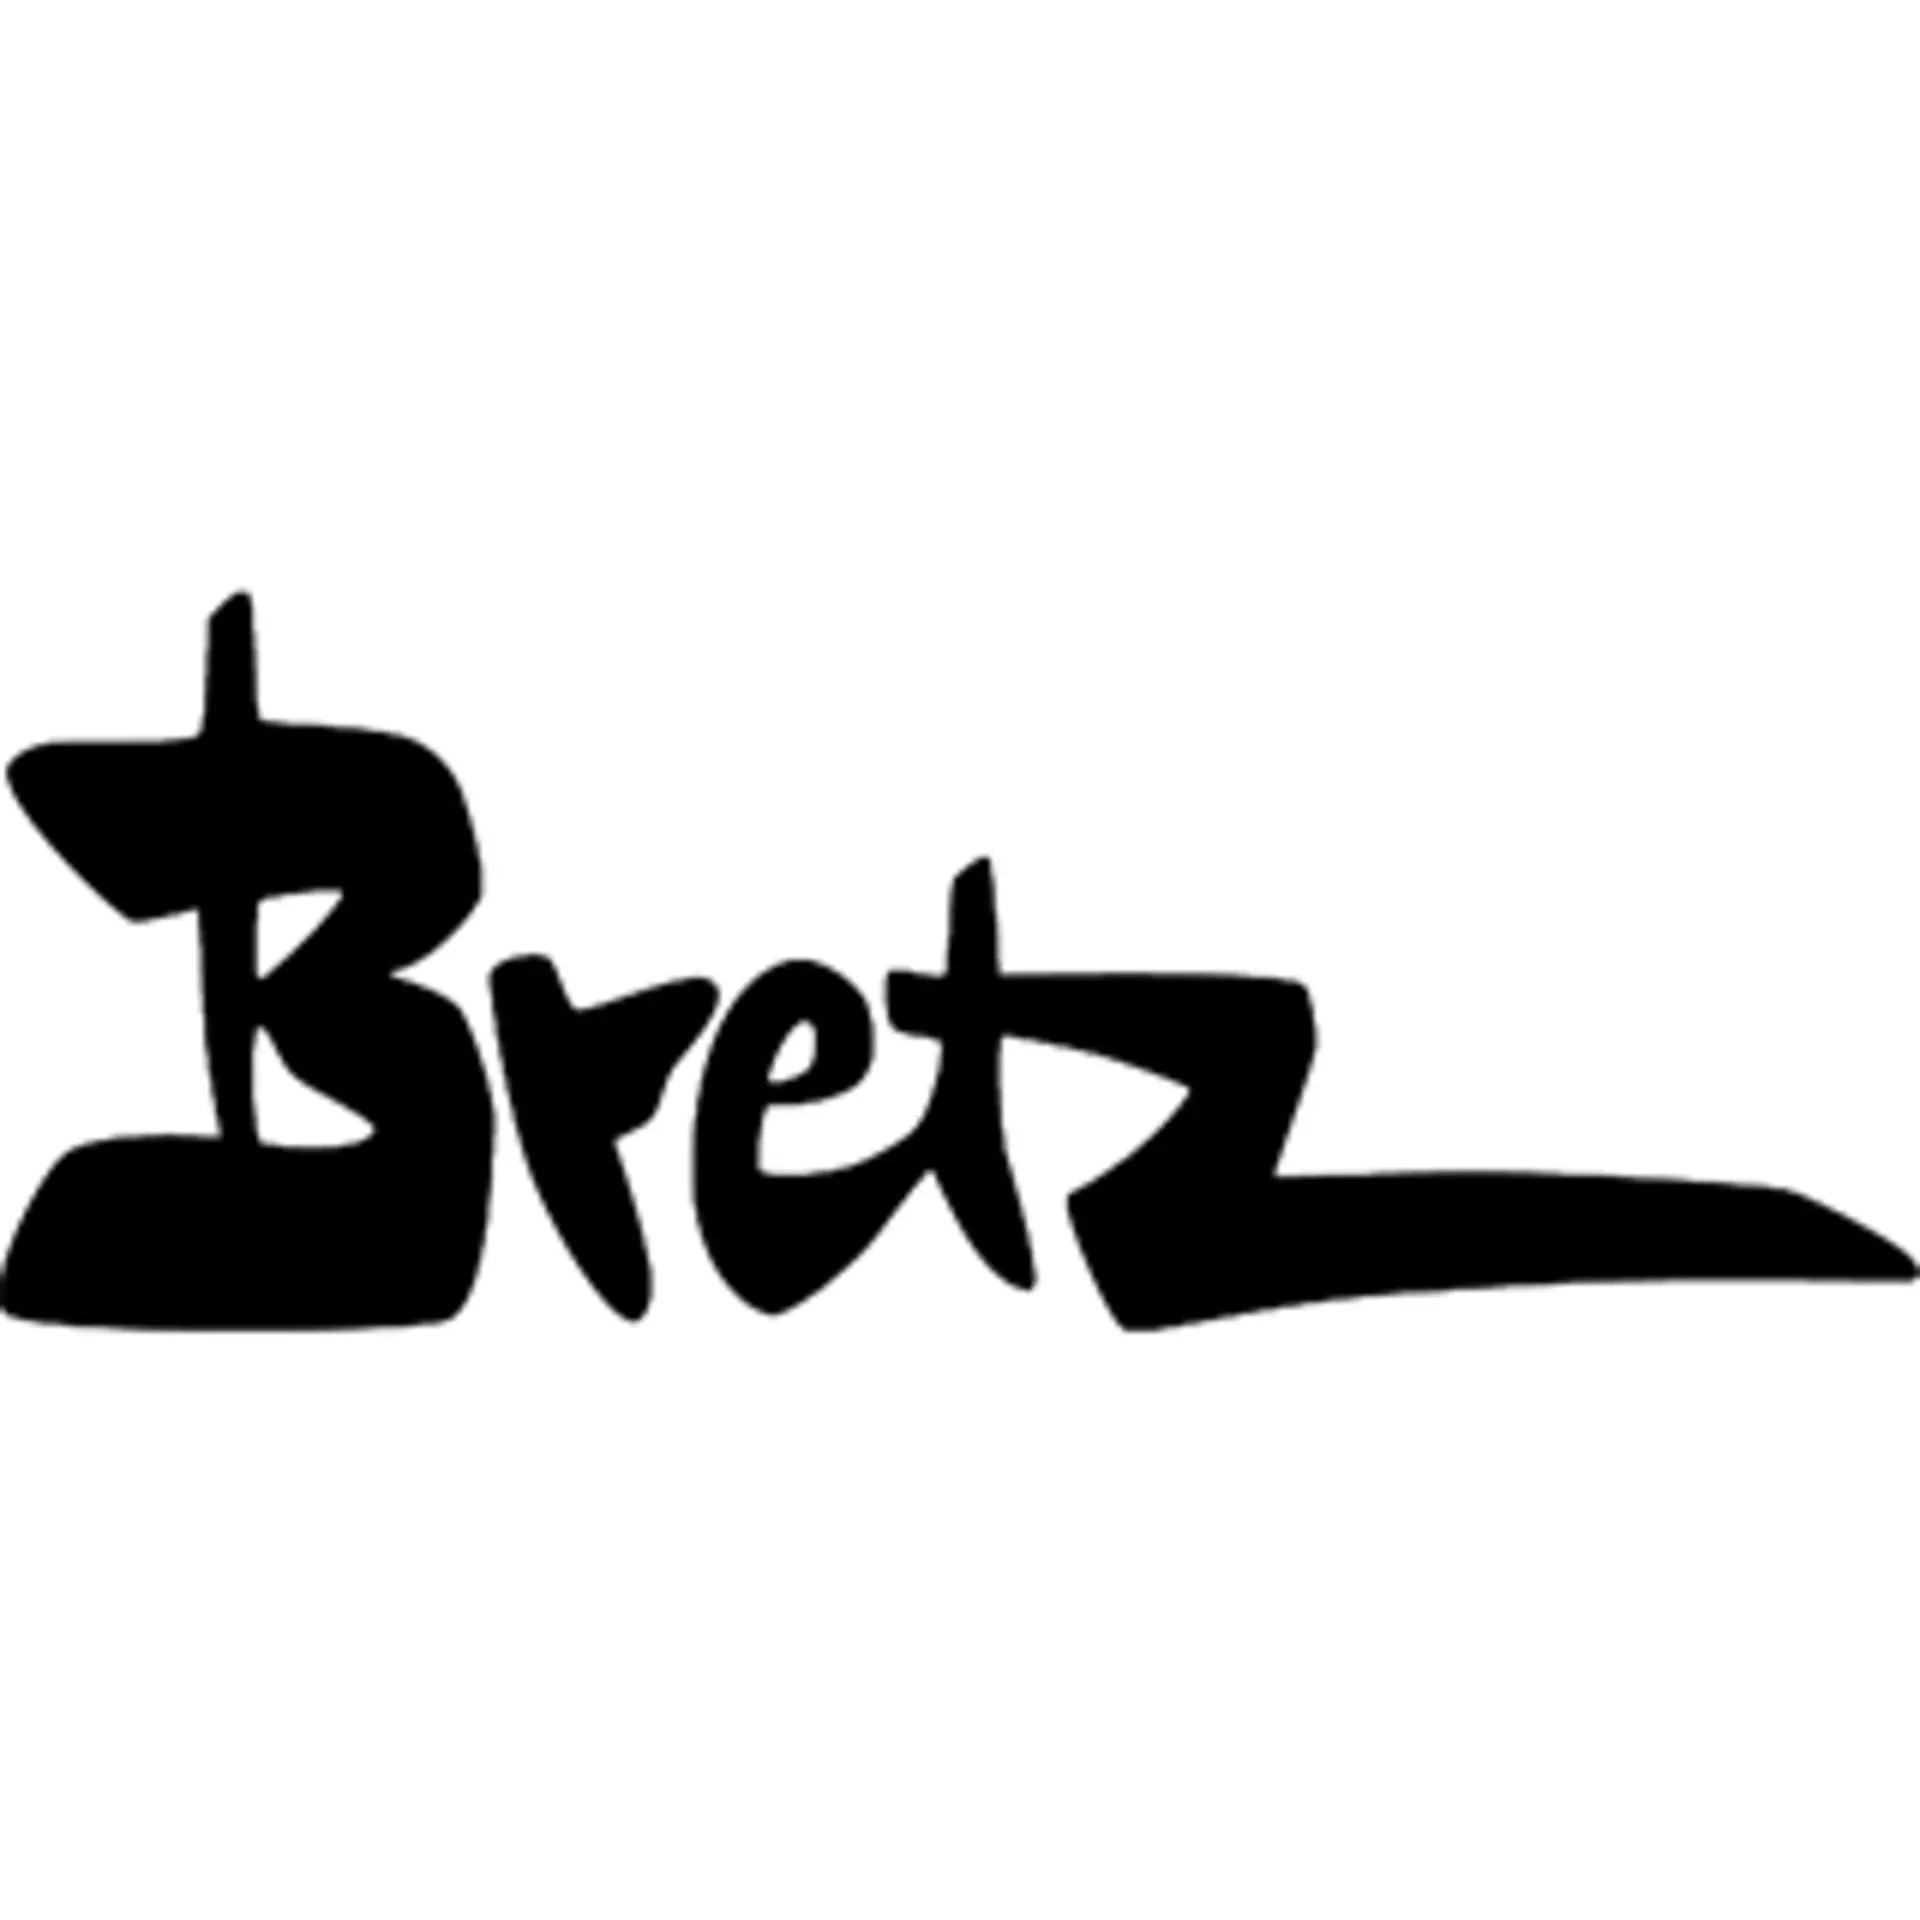 Logo der Marke Bretz